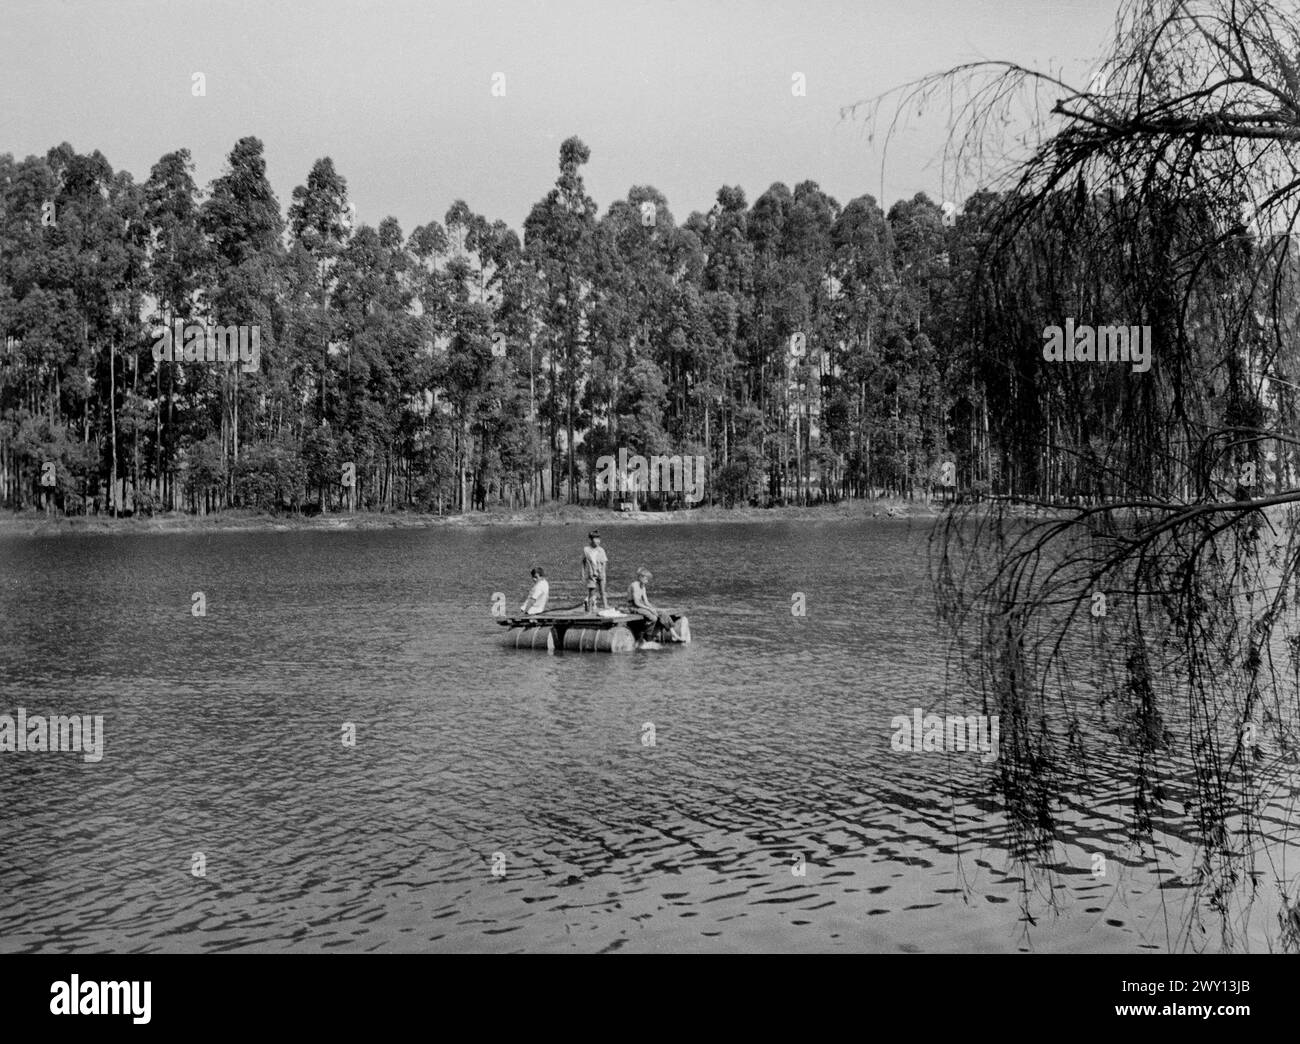 Europäische Jungen auf einem Floß aus Ölfässern, auf einem Fluss, möglicherweise dem Kafubu bei Ndola, Nordrhodesien (heute Sambia) um 1956 Stockfoto